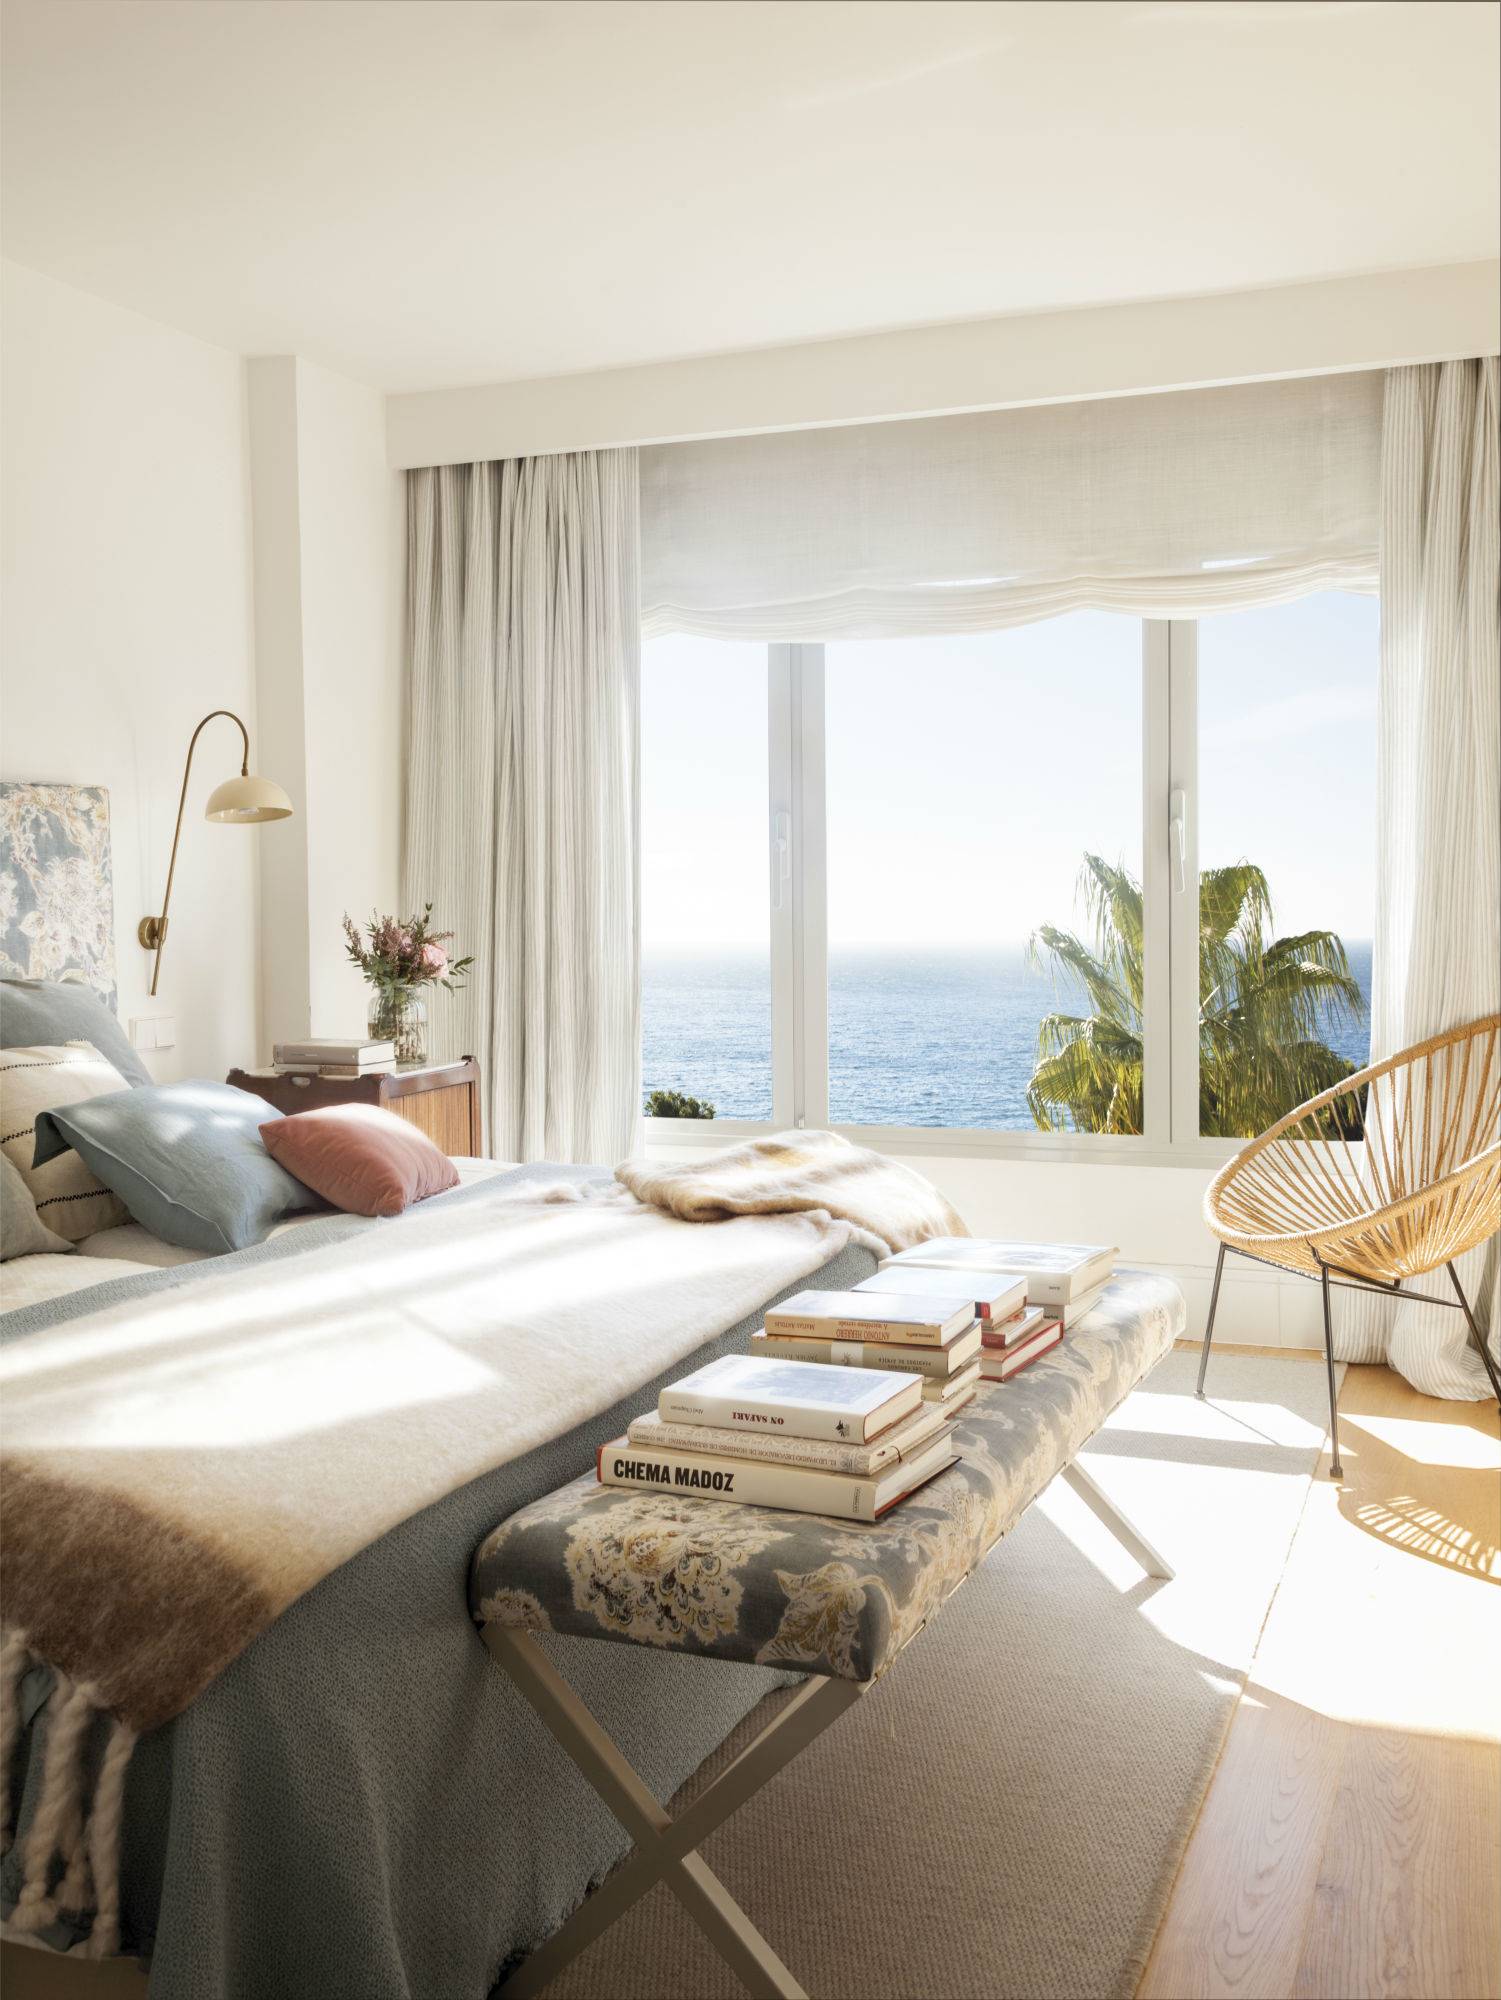 Dormitorio veraniego con grandes vistas al mar en tonos azules y beige 